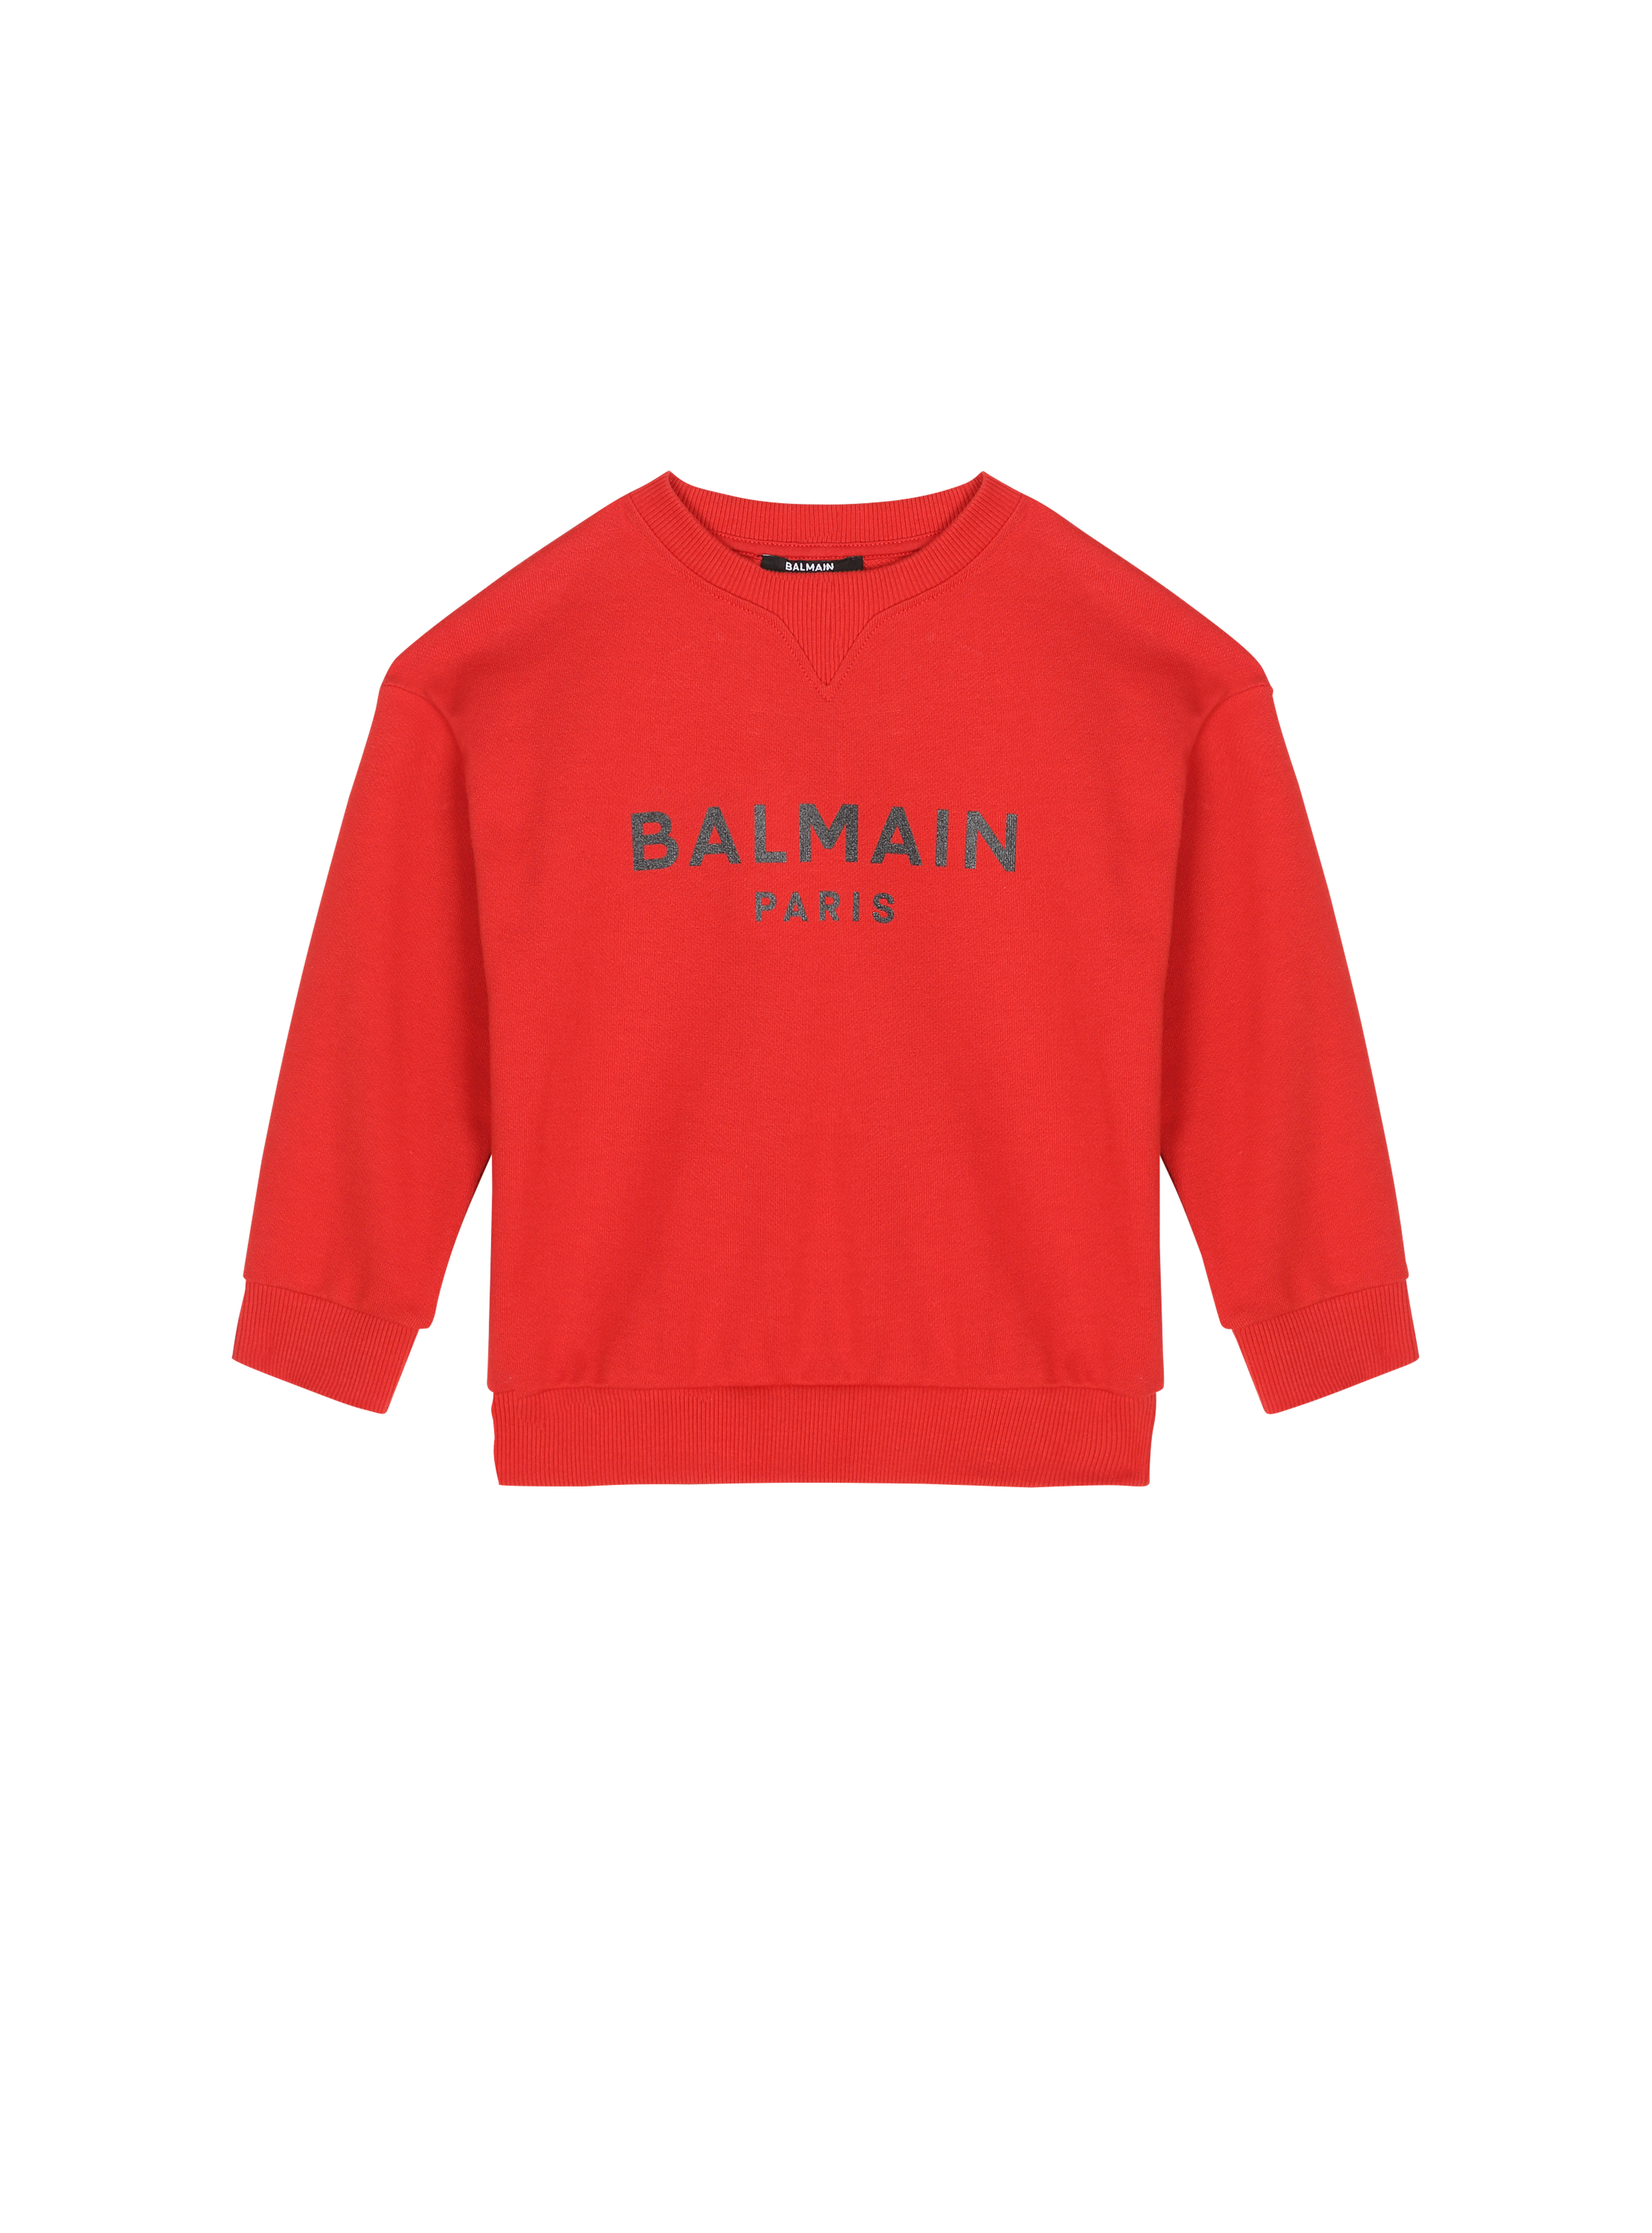 Balmain巴尔曼标志棉质毛衫, red